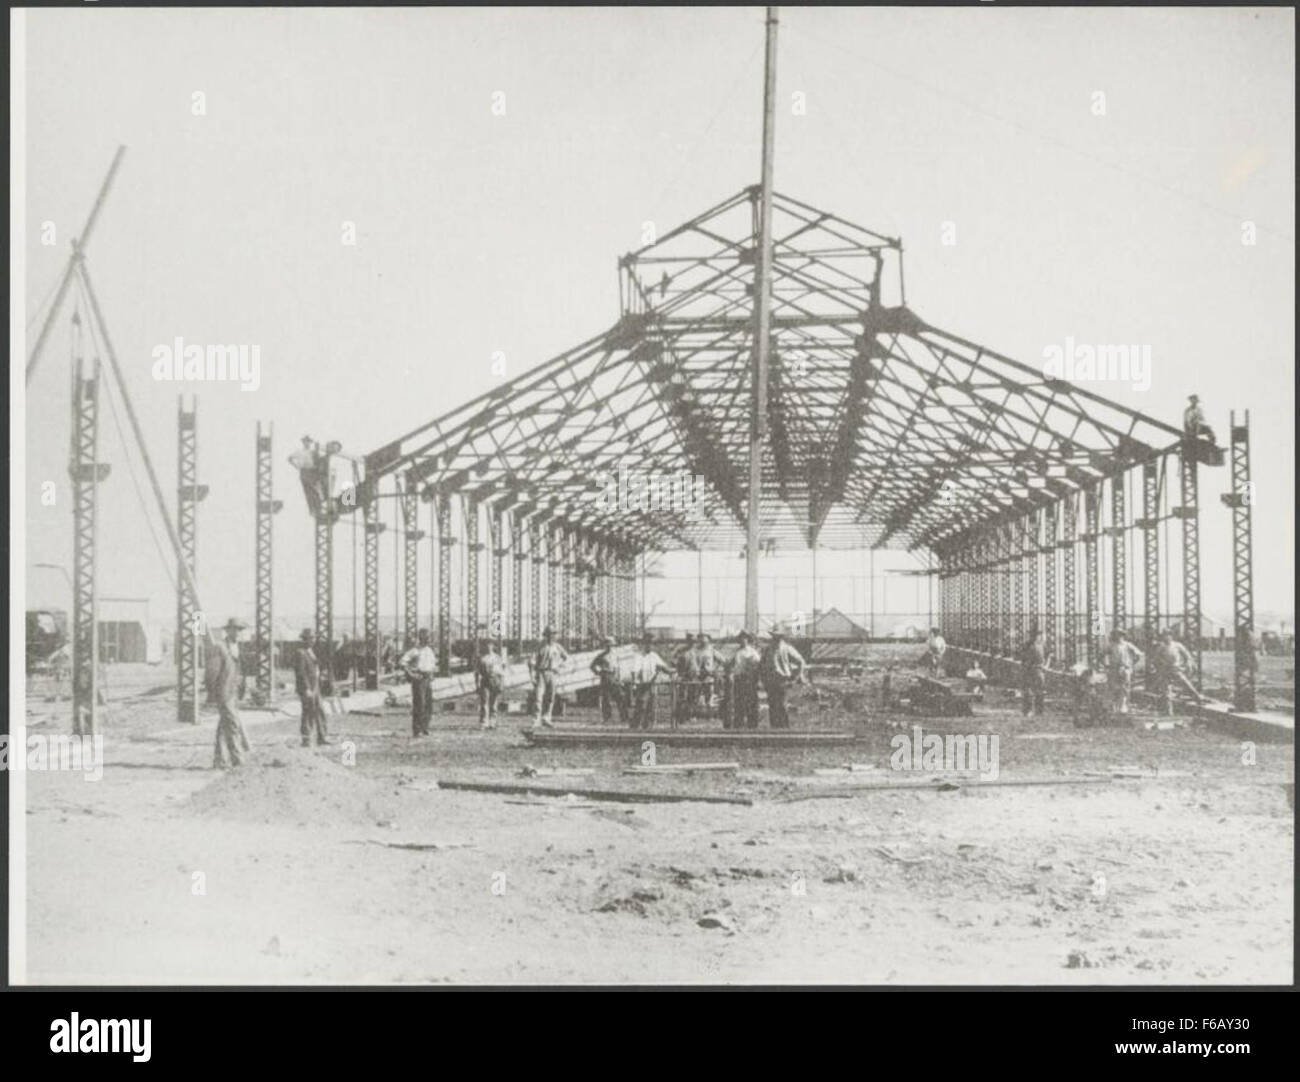 Construction of the tram shed, Kalgoorlie, Western Australia, 19 April 1902, 1 Construction of the tram shed, Kalgoorlie, Western Australia, 19 April Stock Photo